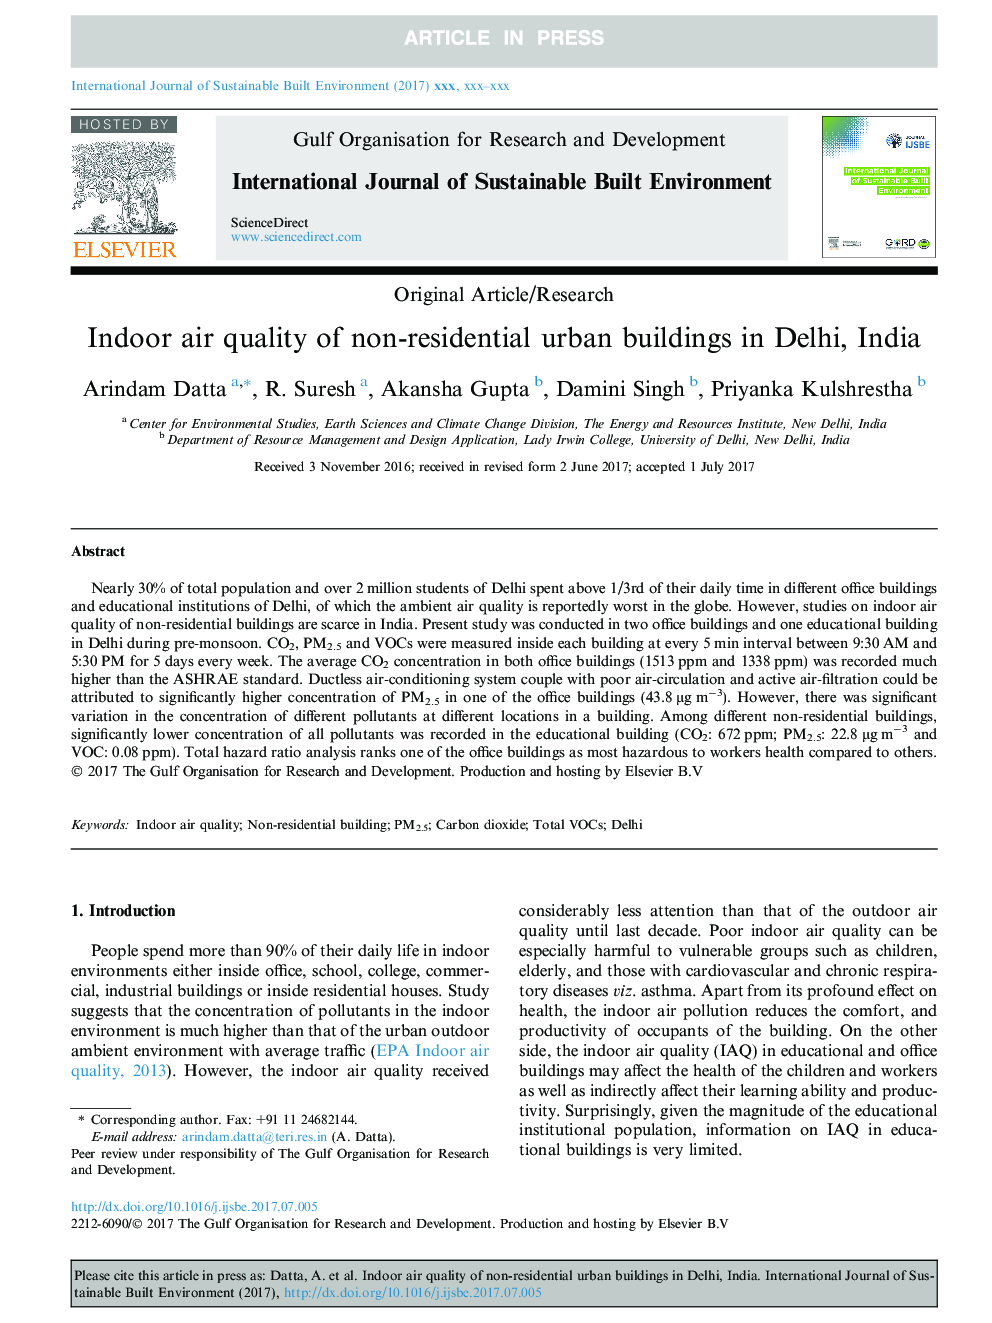 کیفیت هوا داخل ساختمان های غیر مسکونی شهری در دهلی هند 